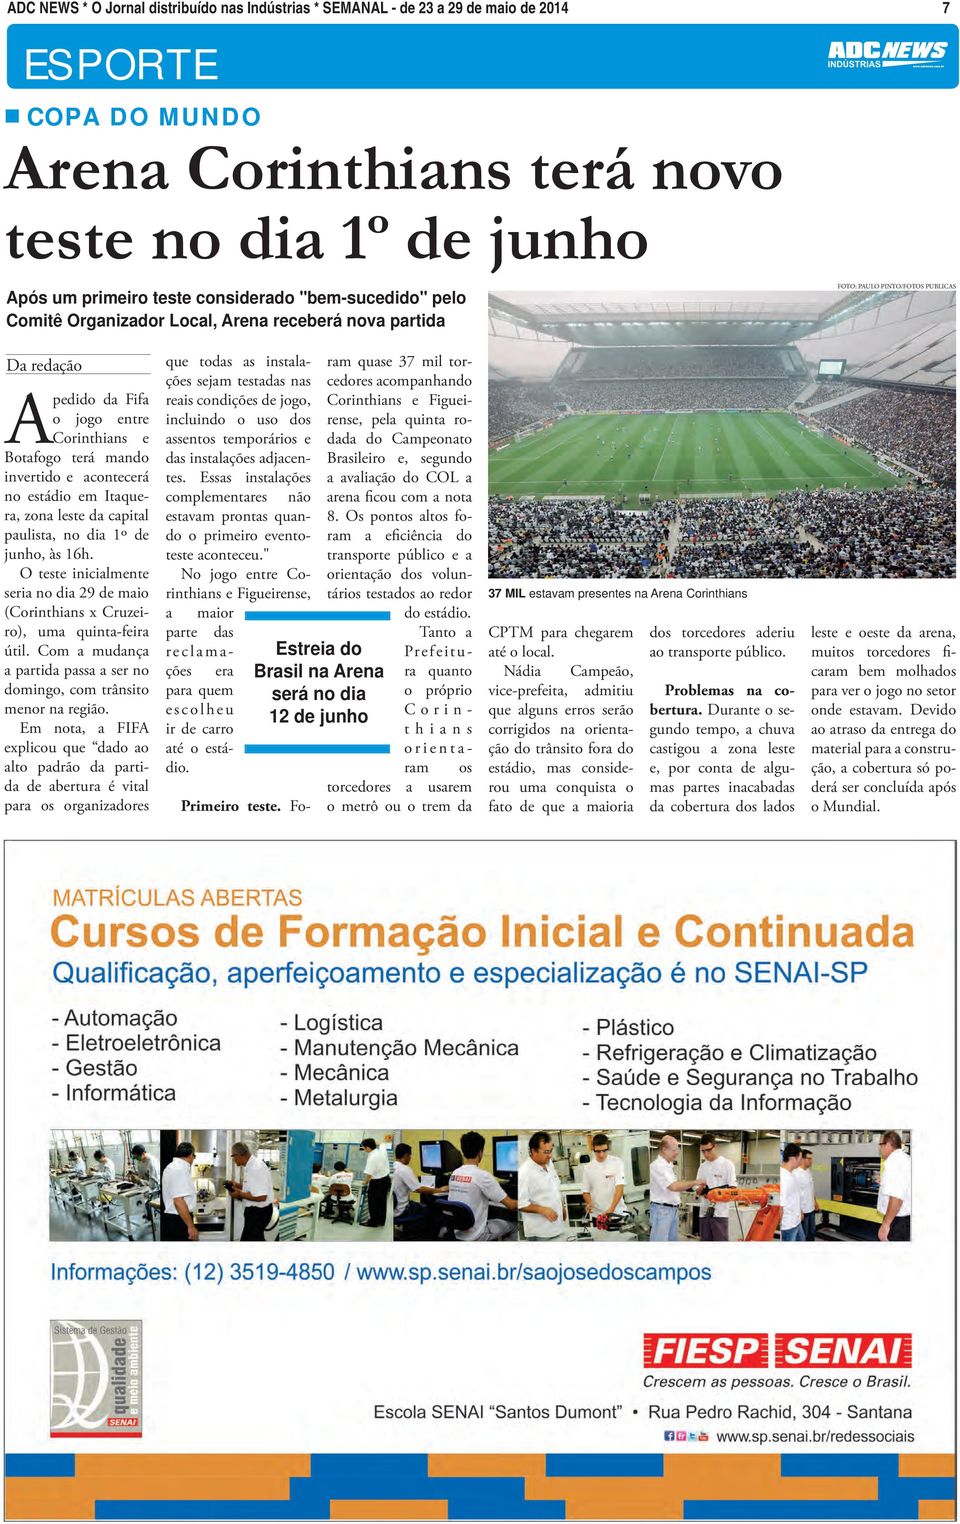 acontecerá no estádio em Itaquera, zona leste da capital paulista, no dia 1º de junho, às 16h. O teste inicialmente seria no dia 29 de maio (Corinthians x Cruzeiro), uma quinta-feira útil.